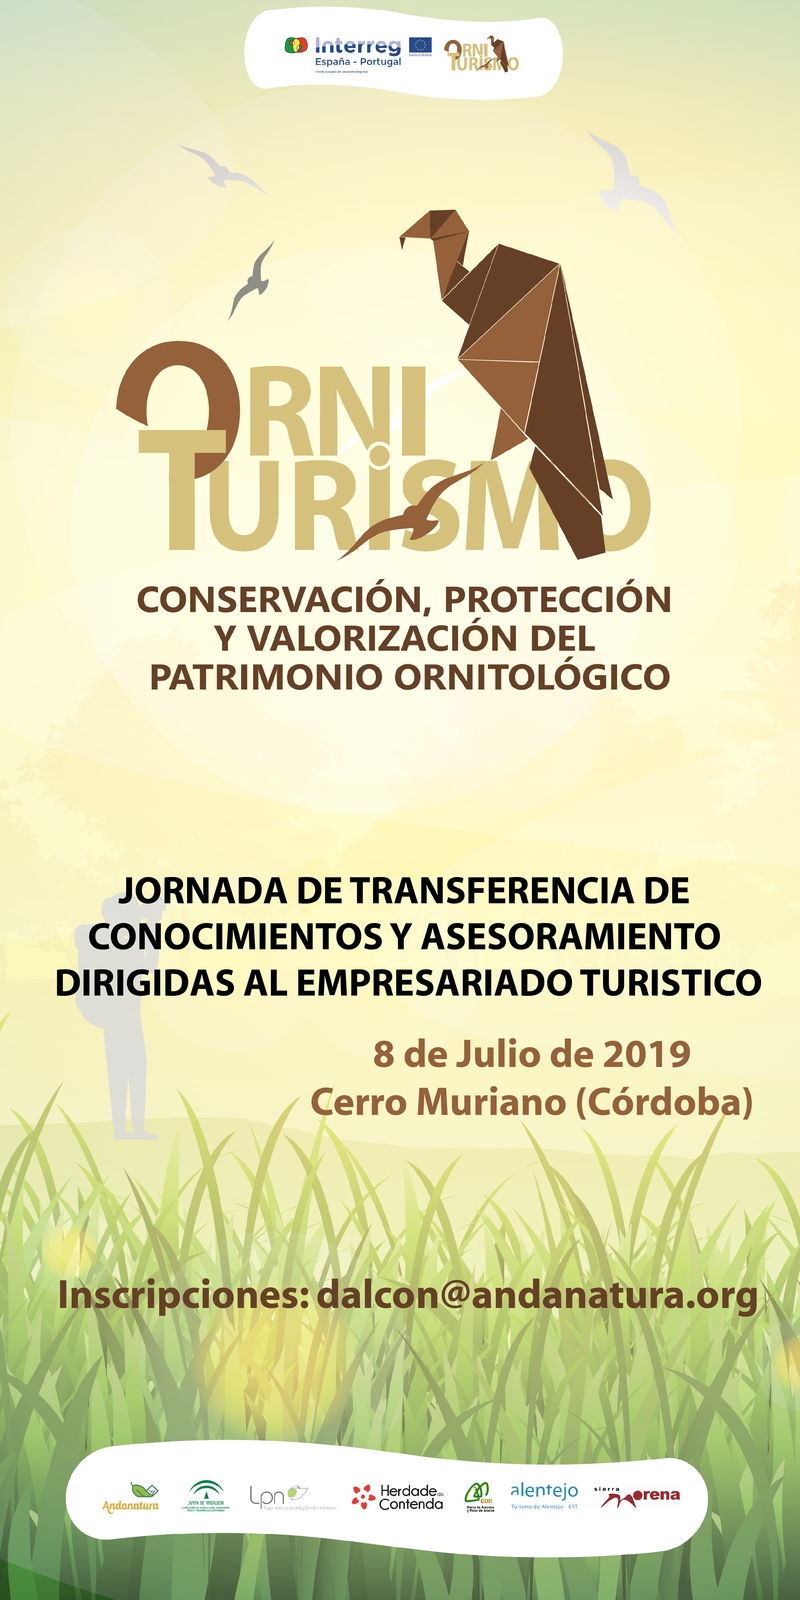 2ª Jornada de transferencia y Asesoramiento para las empresas turísticas (8 de Julio, Cerro Muriano)